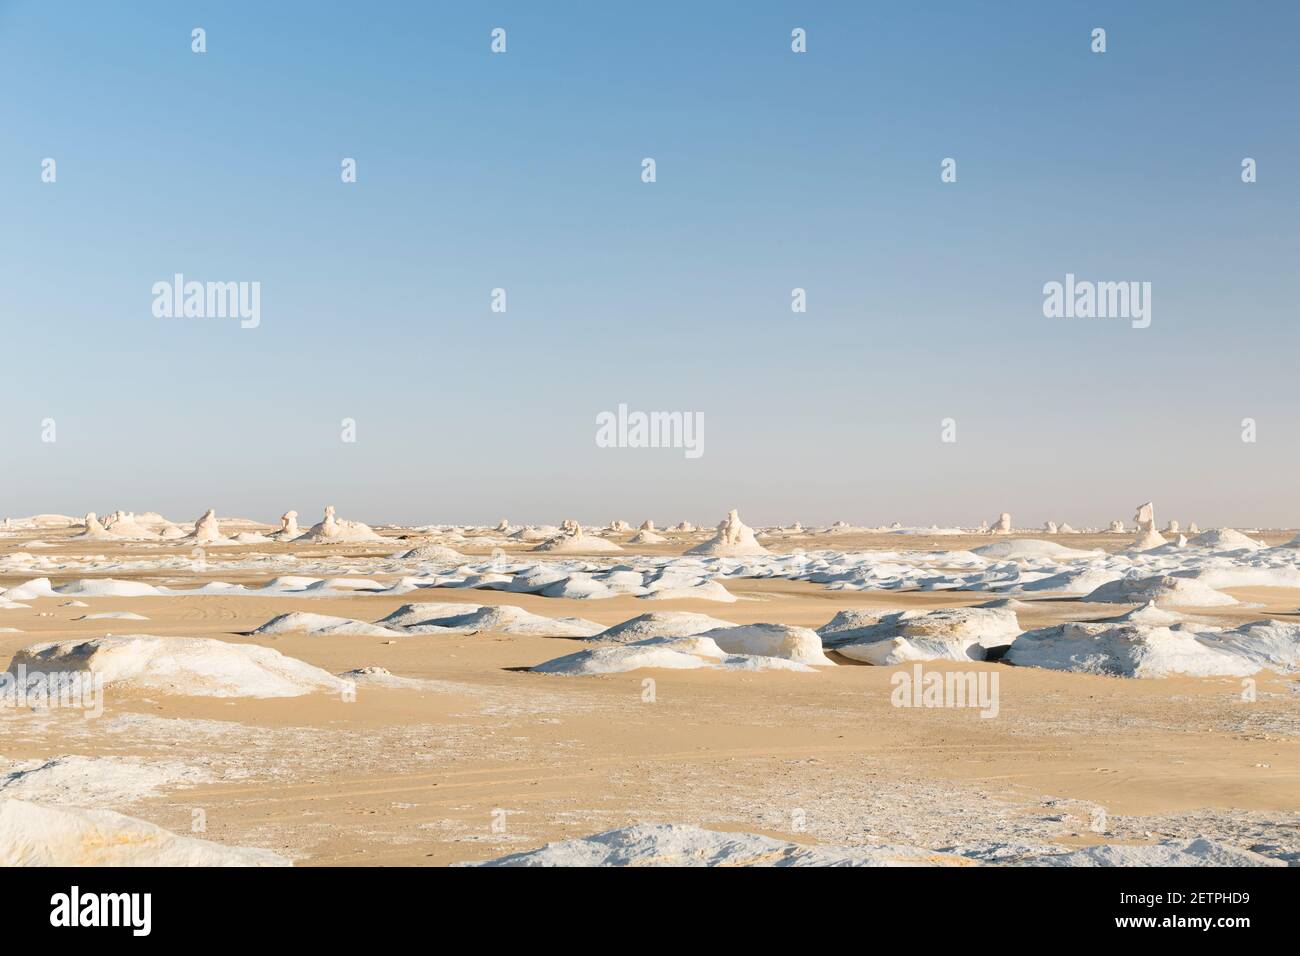 View over the white desert, Western Libyan desert, Egypt Stock Photo